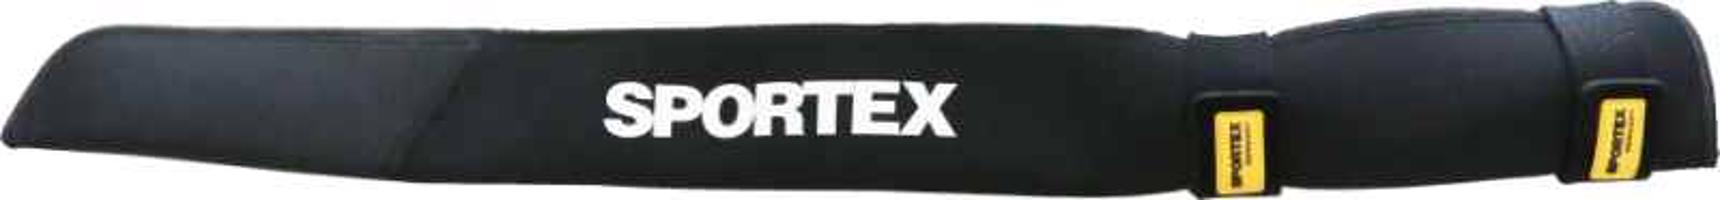 SPORTEX ochranné pouzdro s páskami - neoprenové Variant: Délka: 122cm